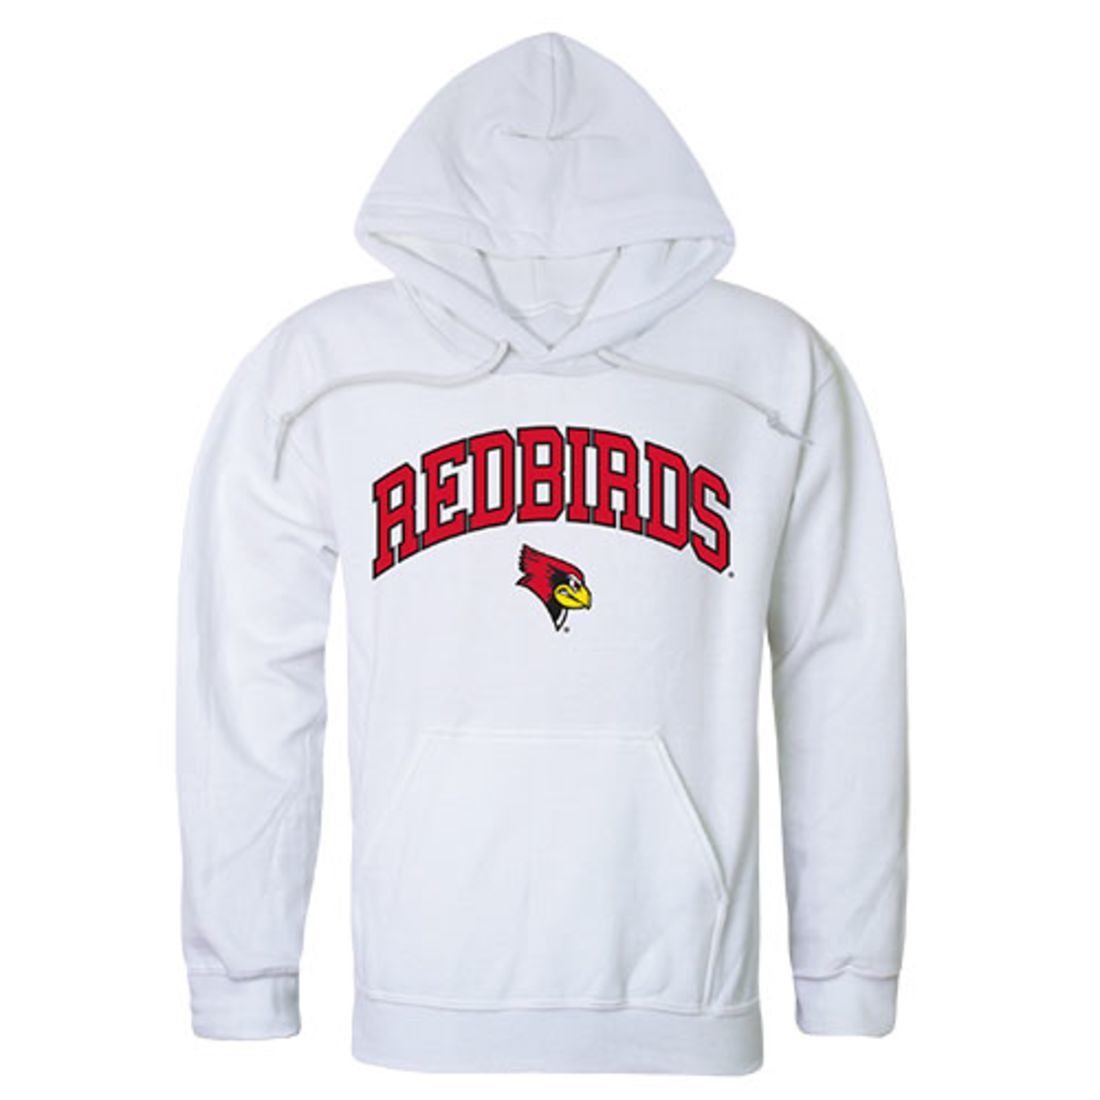 Illinois State University Redbirds Campus Hoodie Sweatshirt White-Campus-Wardrobe